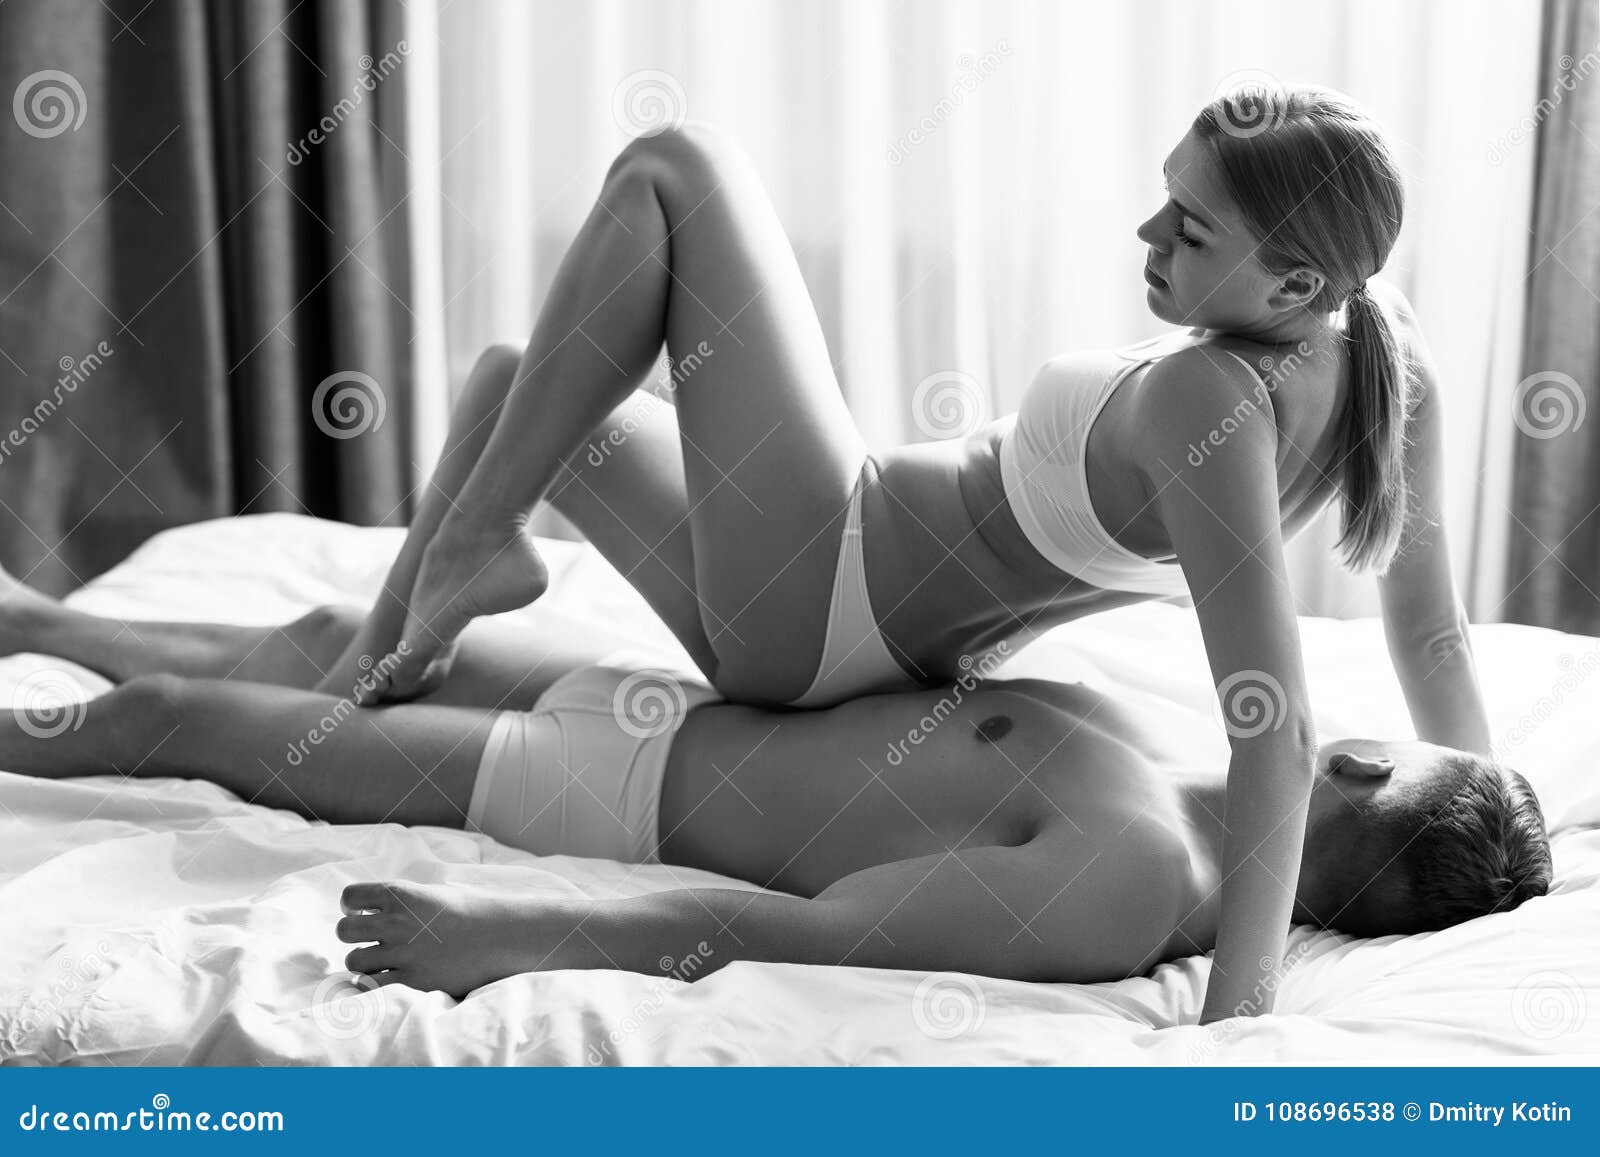 Couple Doing Erotic Massage in Bedroom